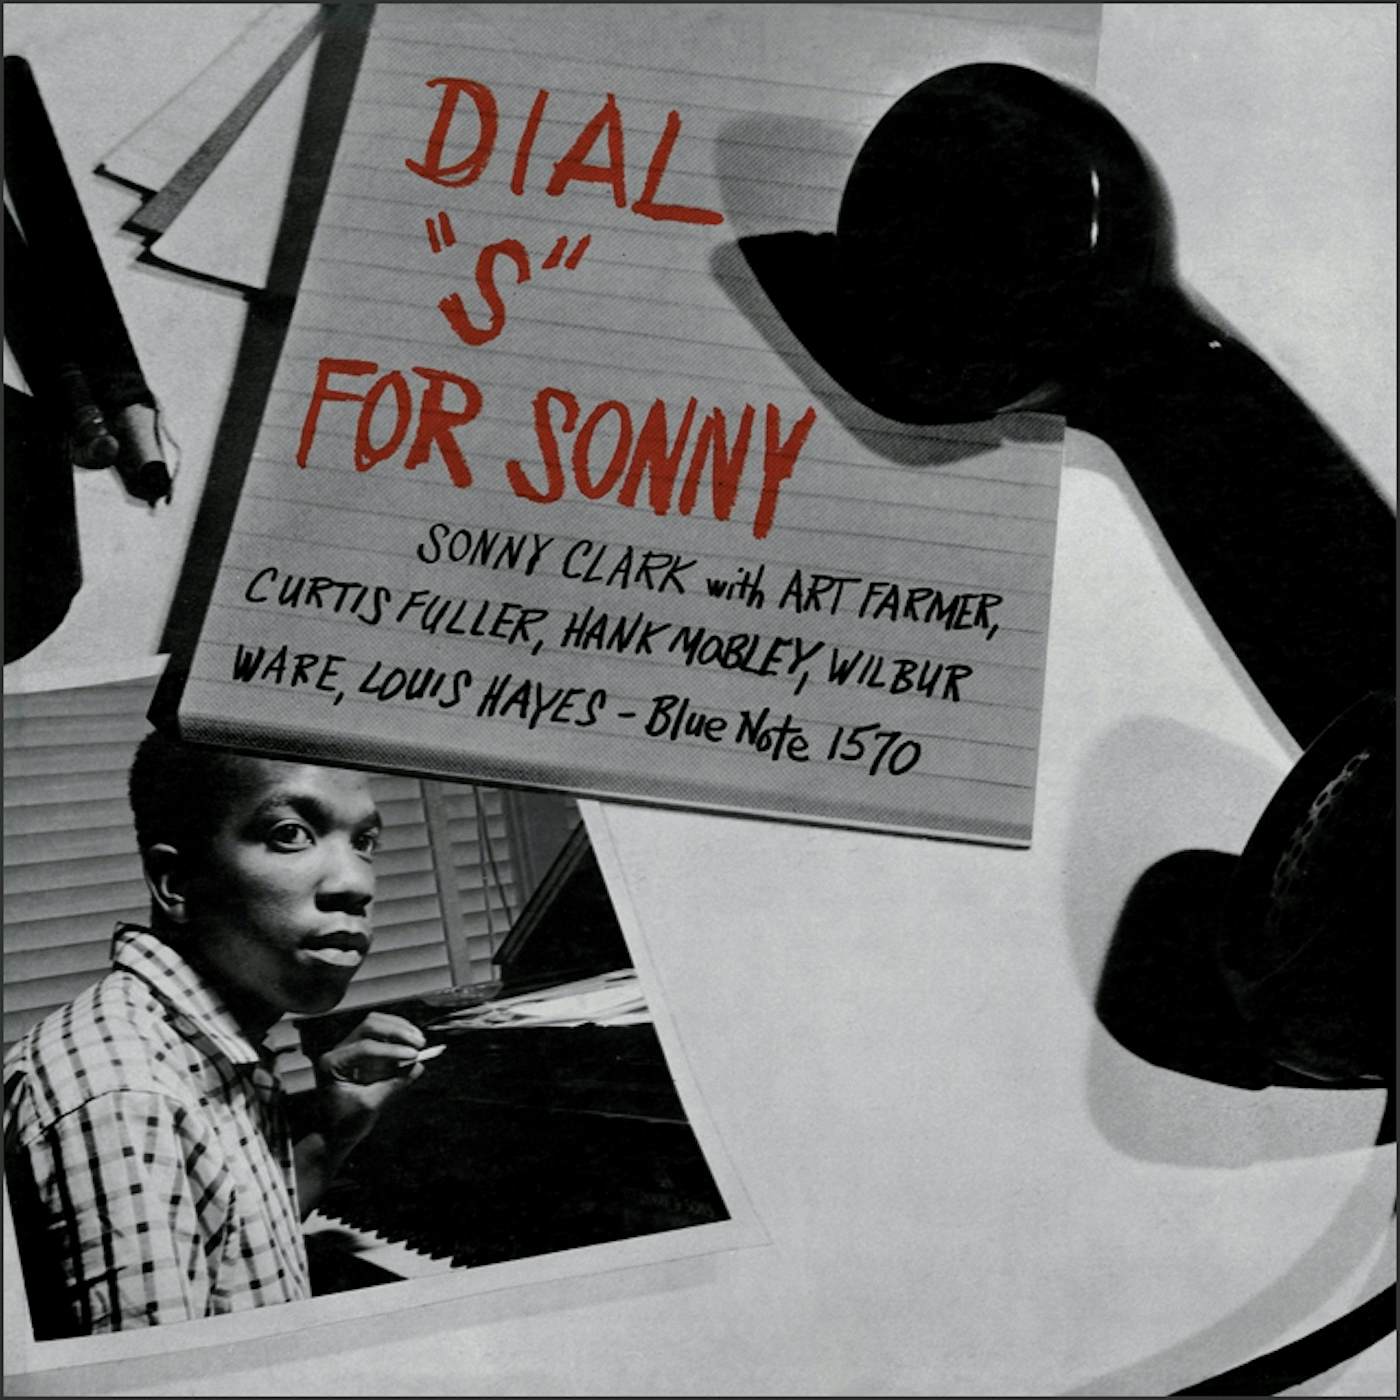 Sonny Clark DIAL S FOR SONNY Vinyl Record